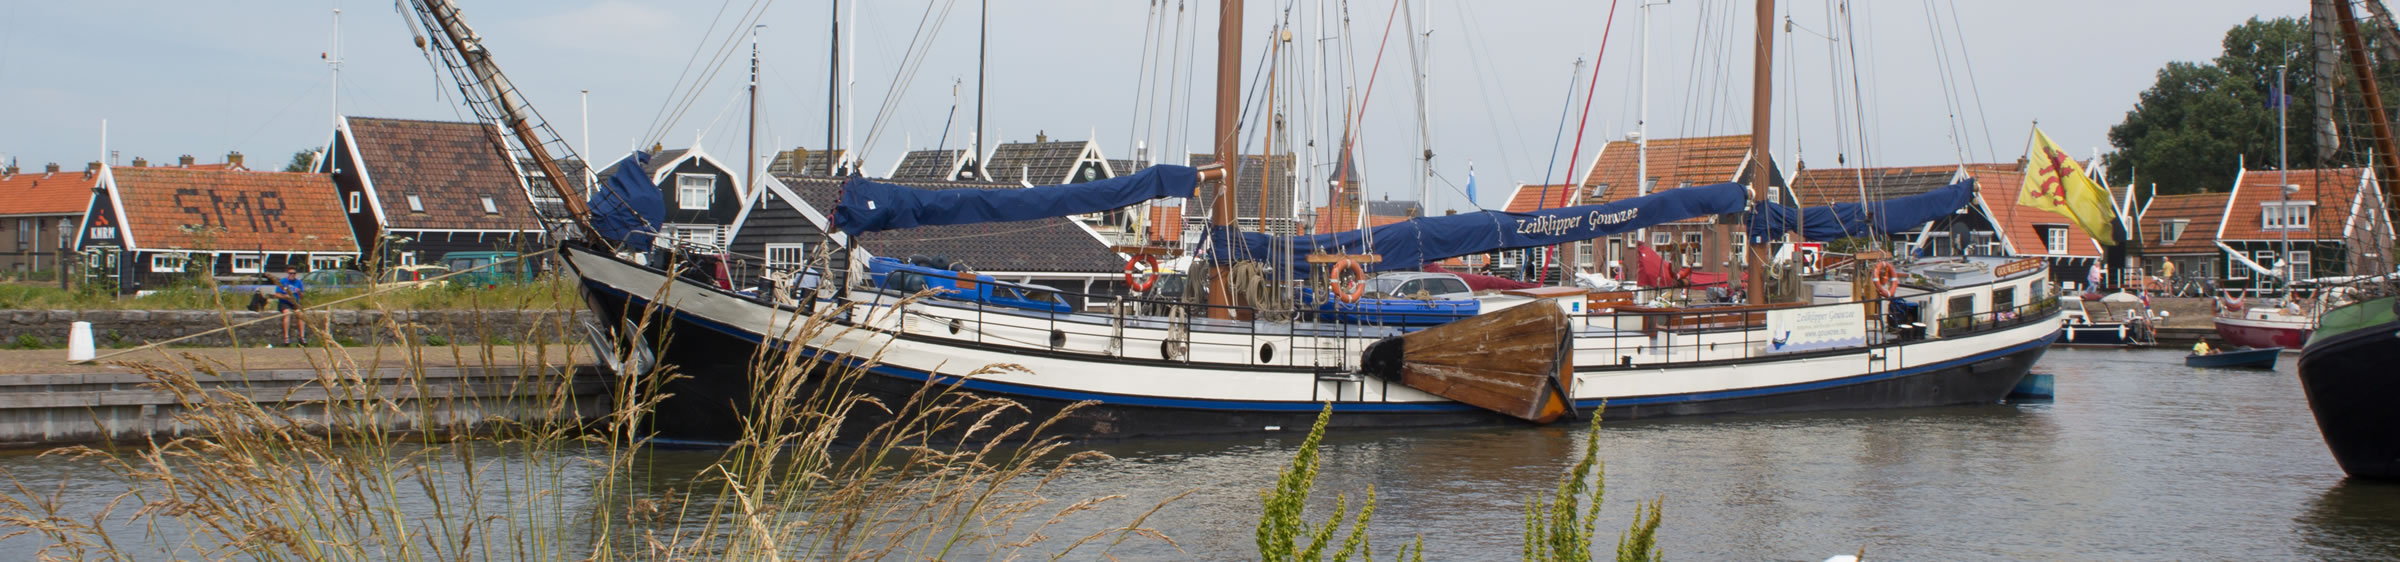 Daytrip Sailing IJsselmeer and Gouwzee